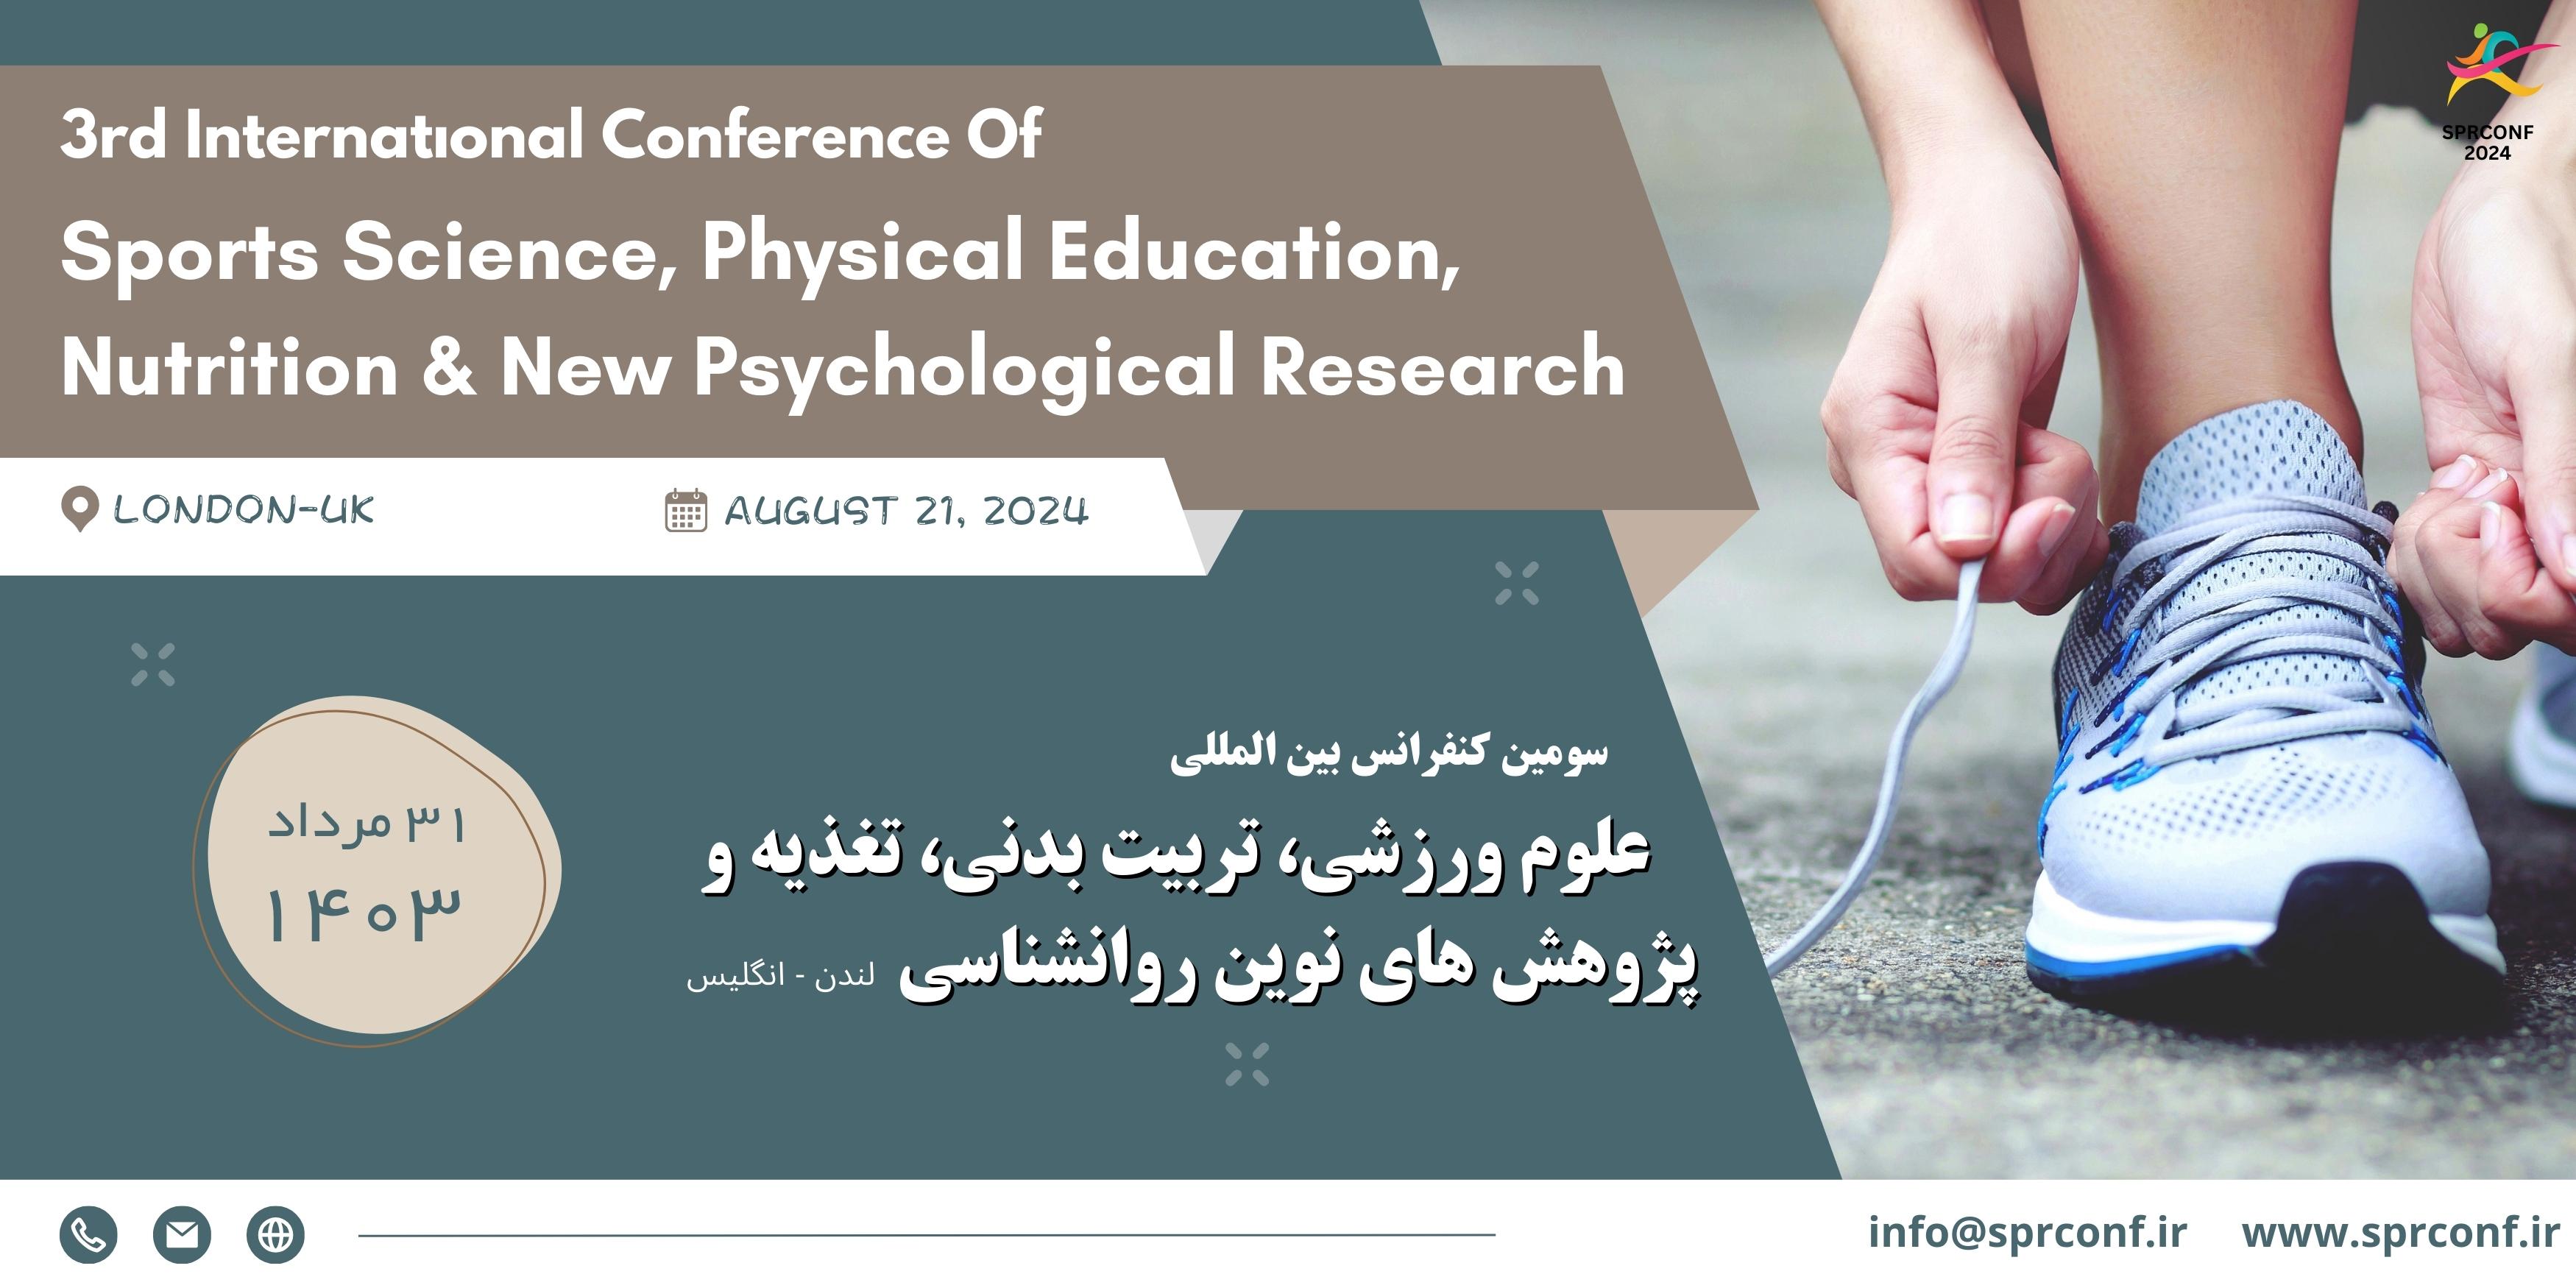  کنفرانس بین المللی علوم ورزشی ، تربیت بدنی ، تغذیه و پژوهش های نوین روانشناسی